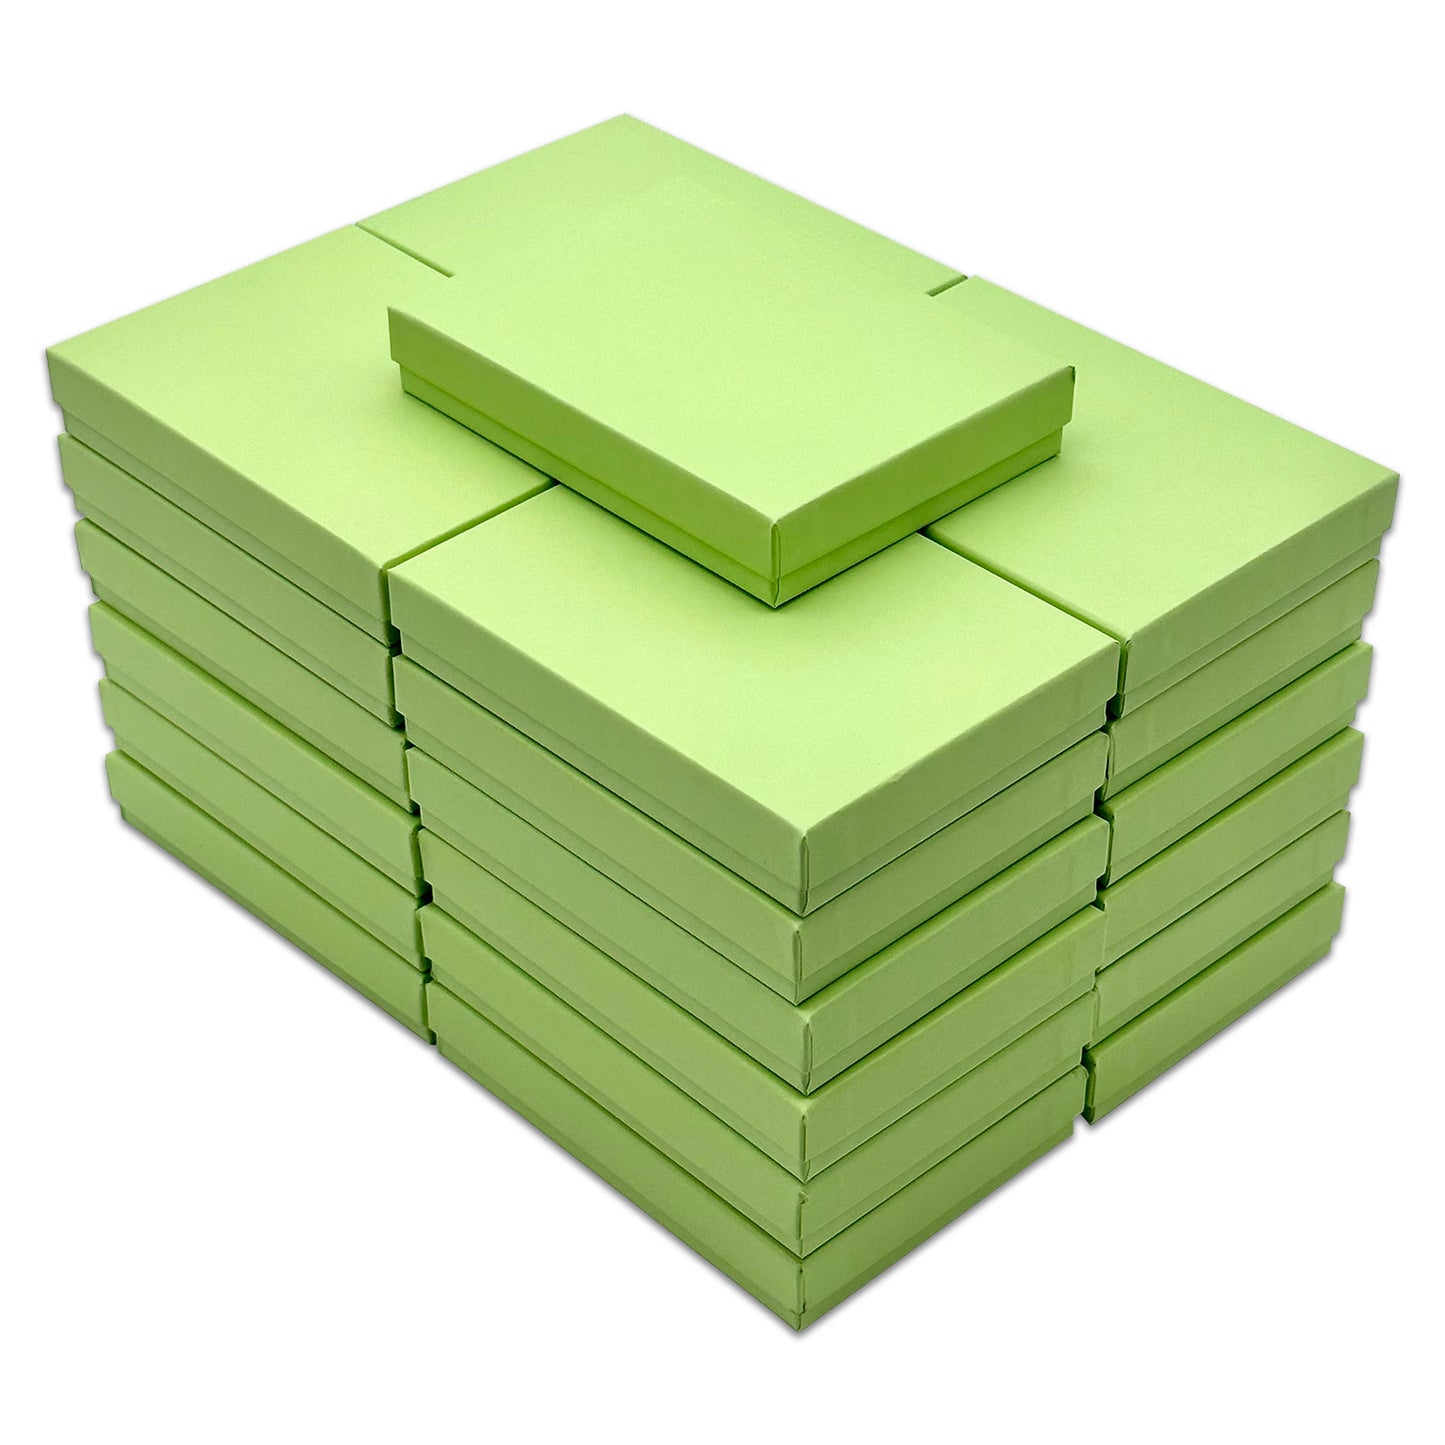 5 7/16" x 3 15/16" x 1" Mint Green Cotton Filled Paper Box